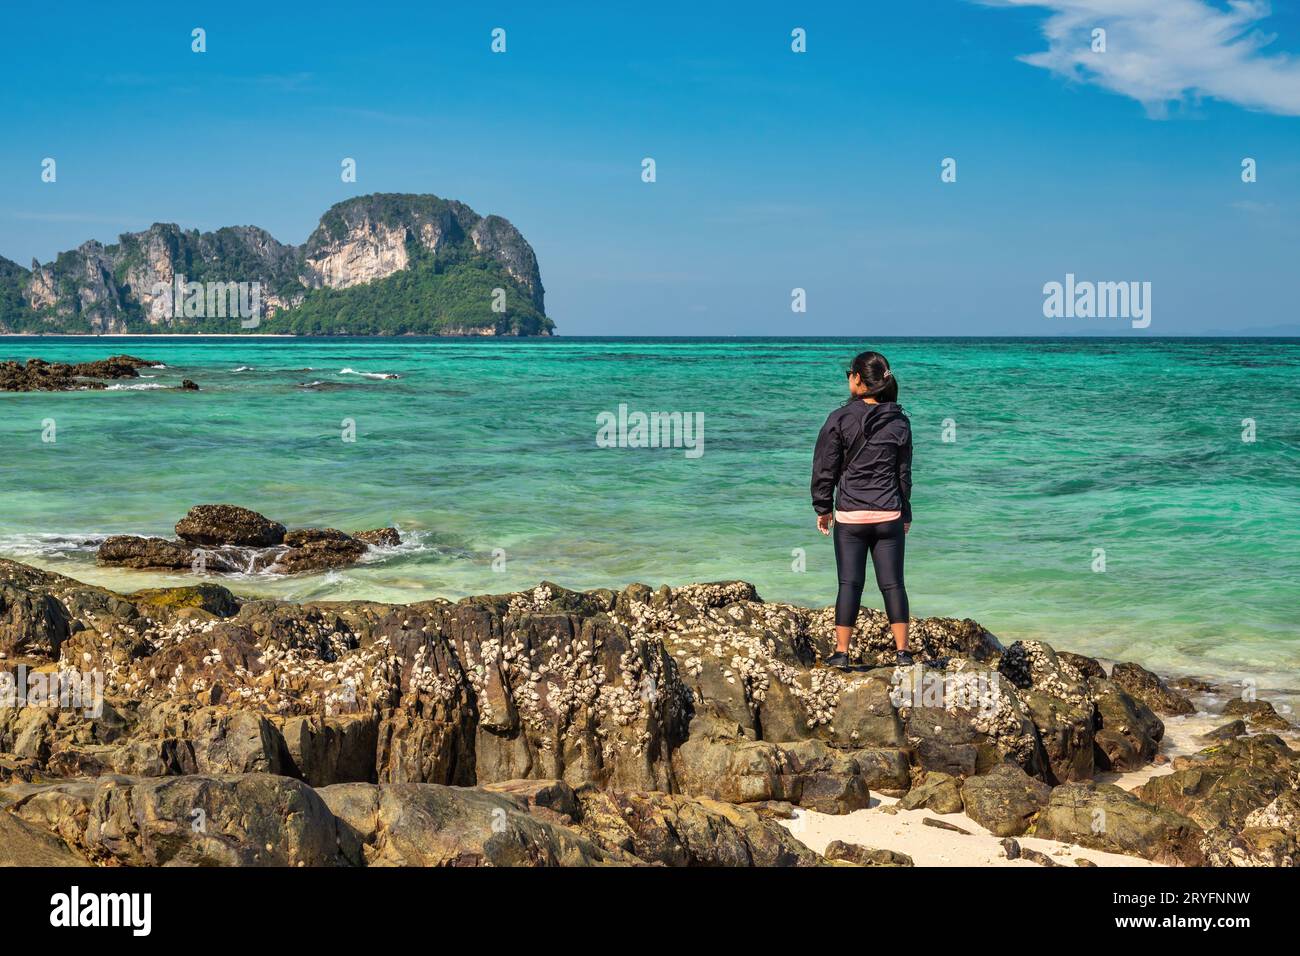 Vista delle isole tropicali con una donna turistica che guarda l'acqua del mare blu oceano e la spiaggia di sabbia bianca a Bam Foto Stock